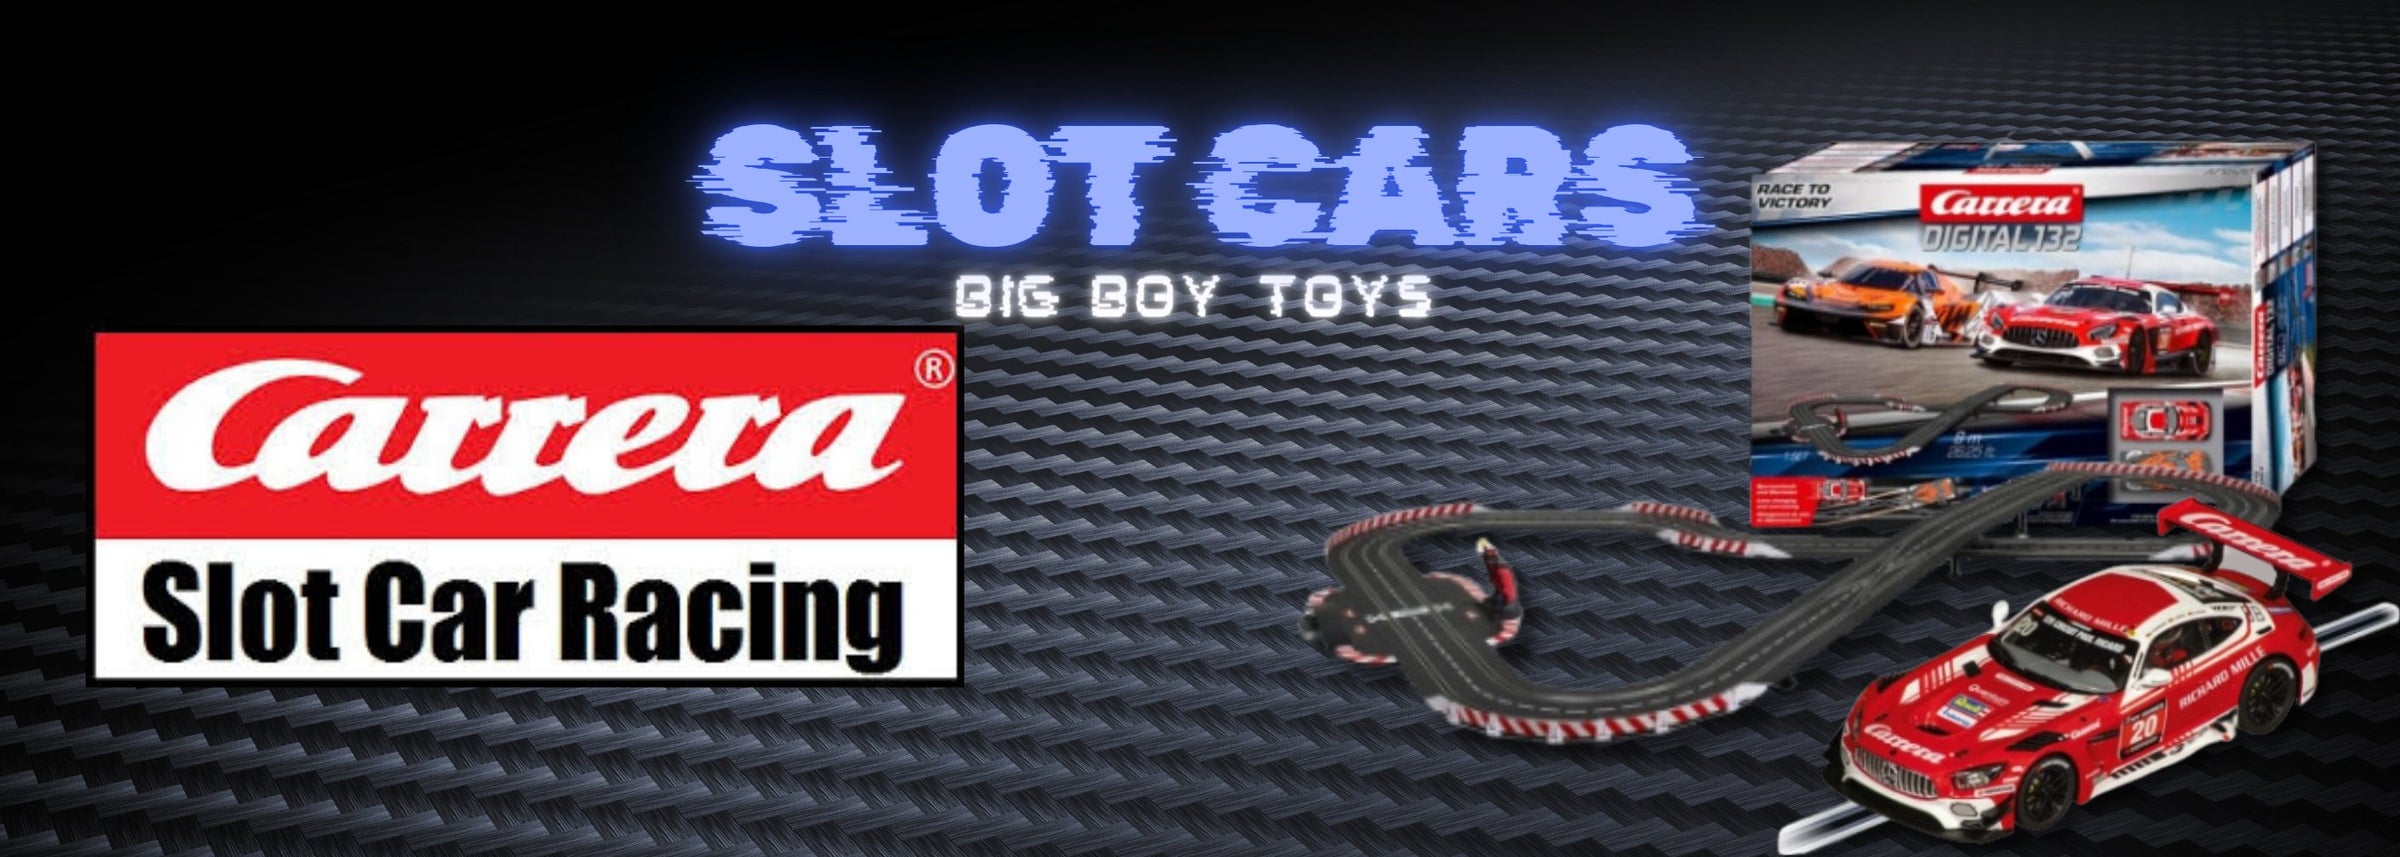 Slot Cars Big Boy Toys Carrera